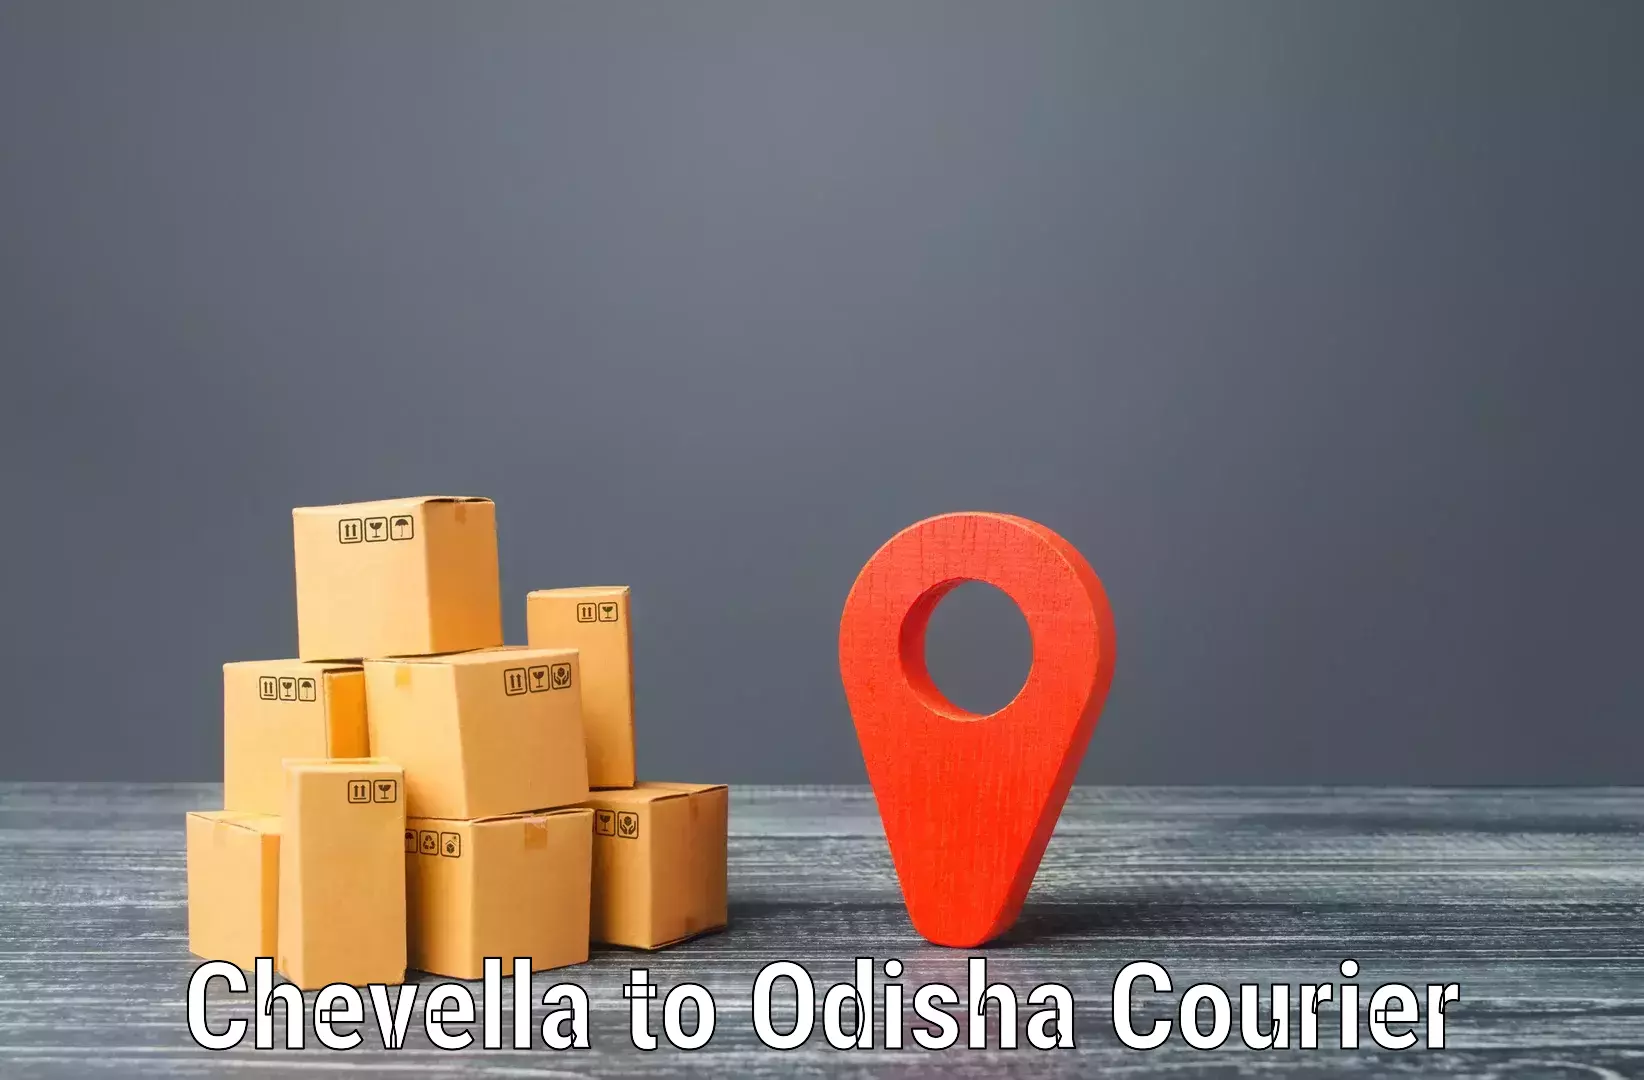 Quick dispatch service in Chevella to Udala